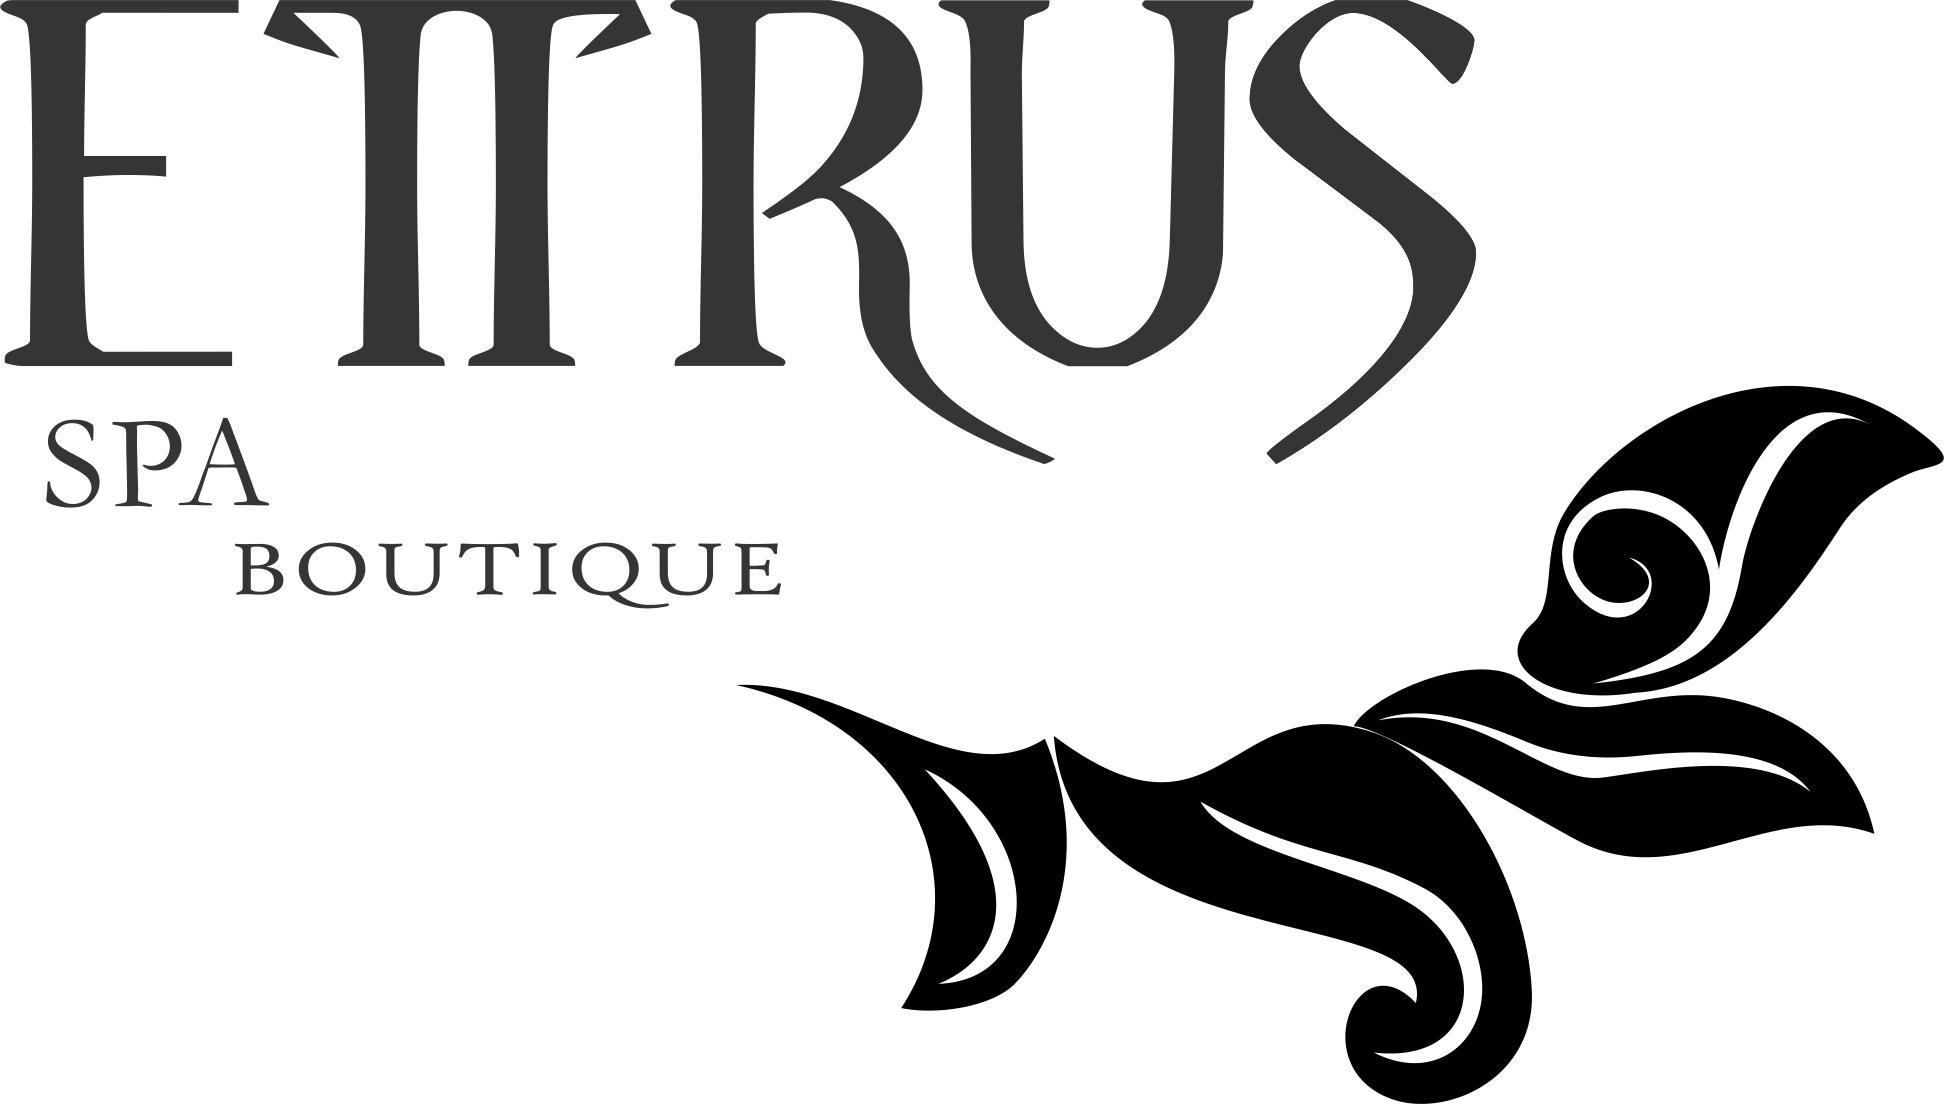 Ettrus Spa Boutique logo